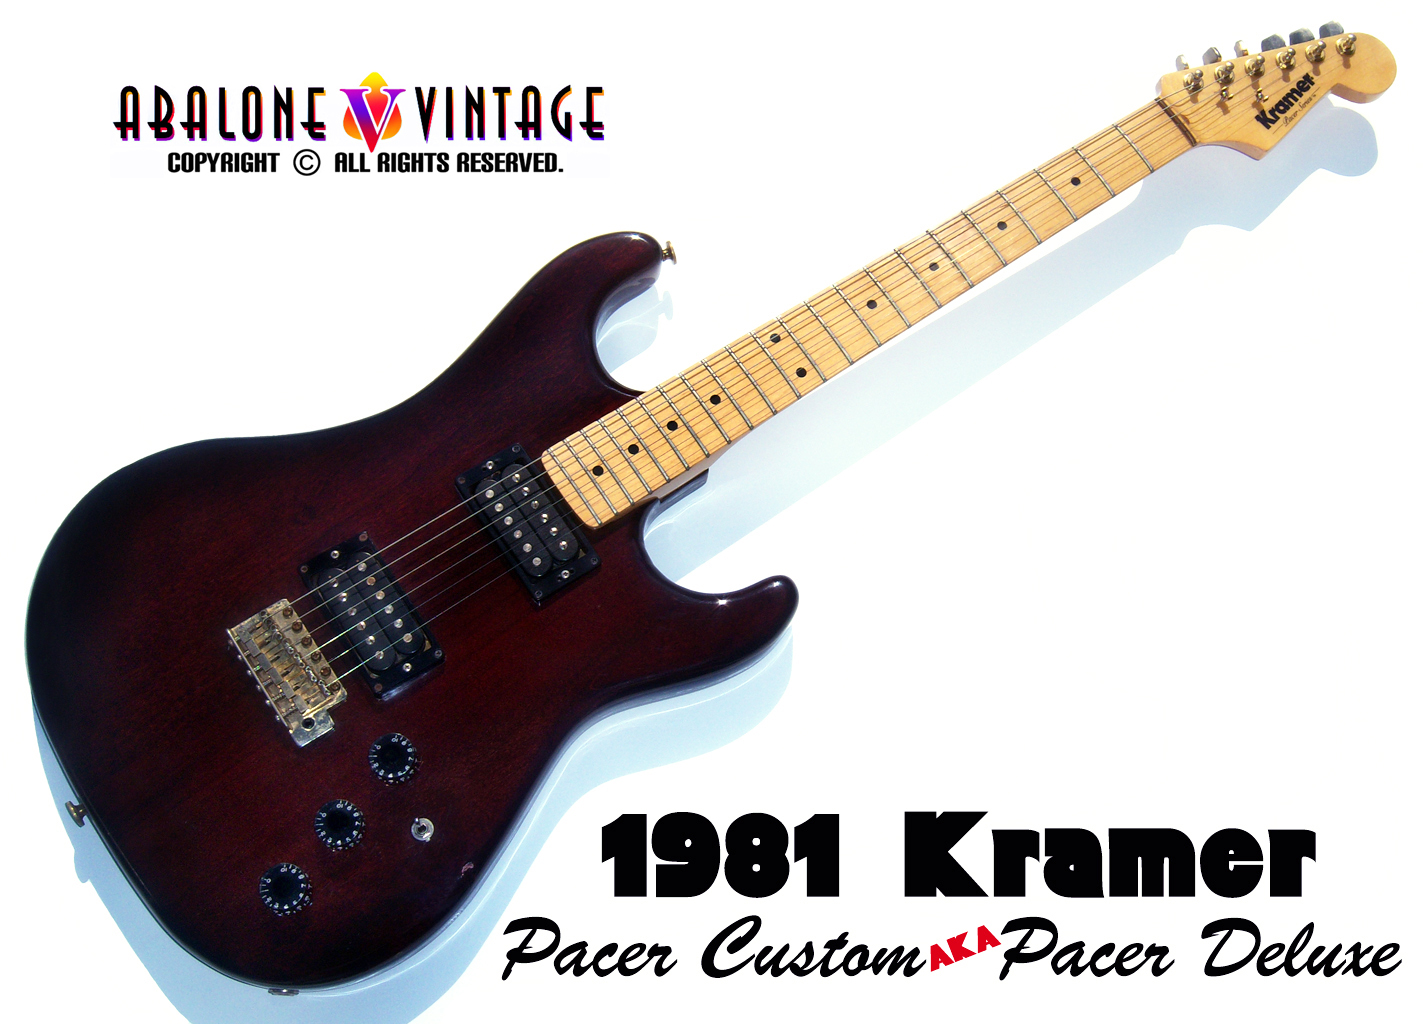 1981 Kramer Pacer Custom guitar